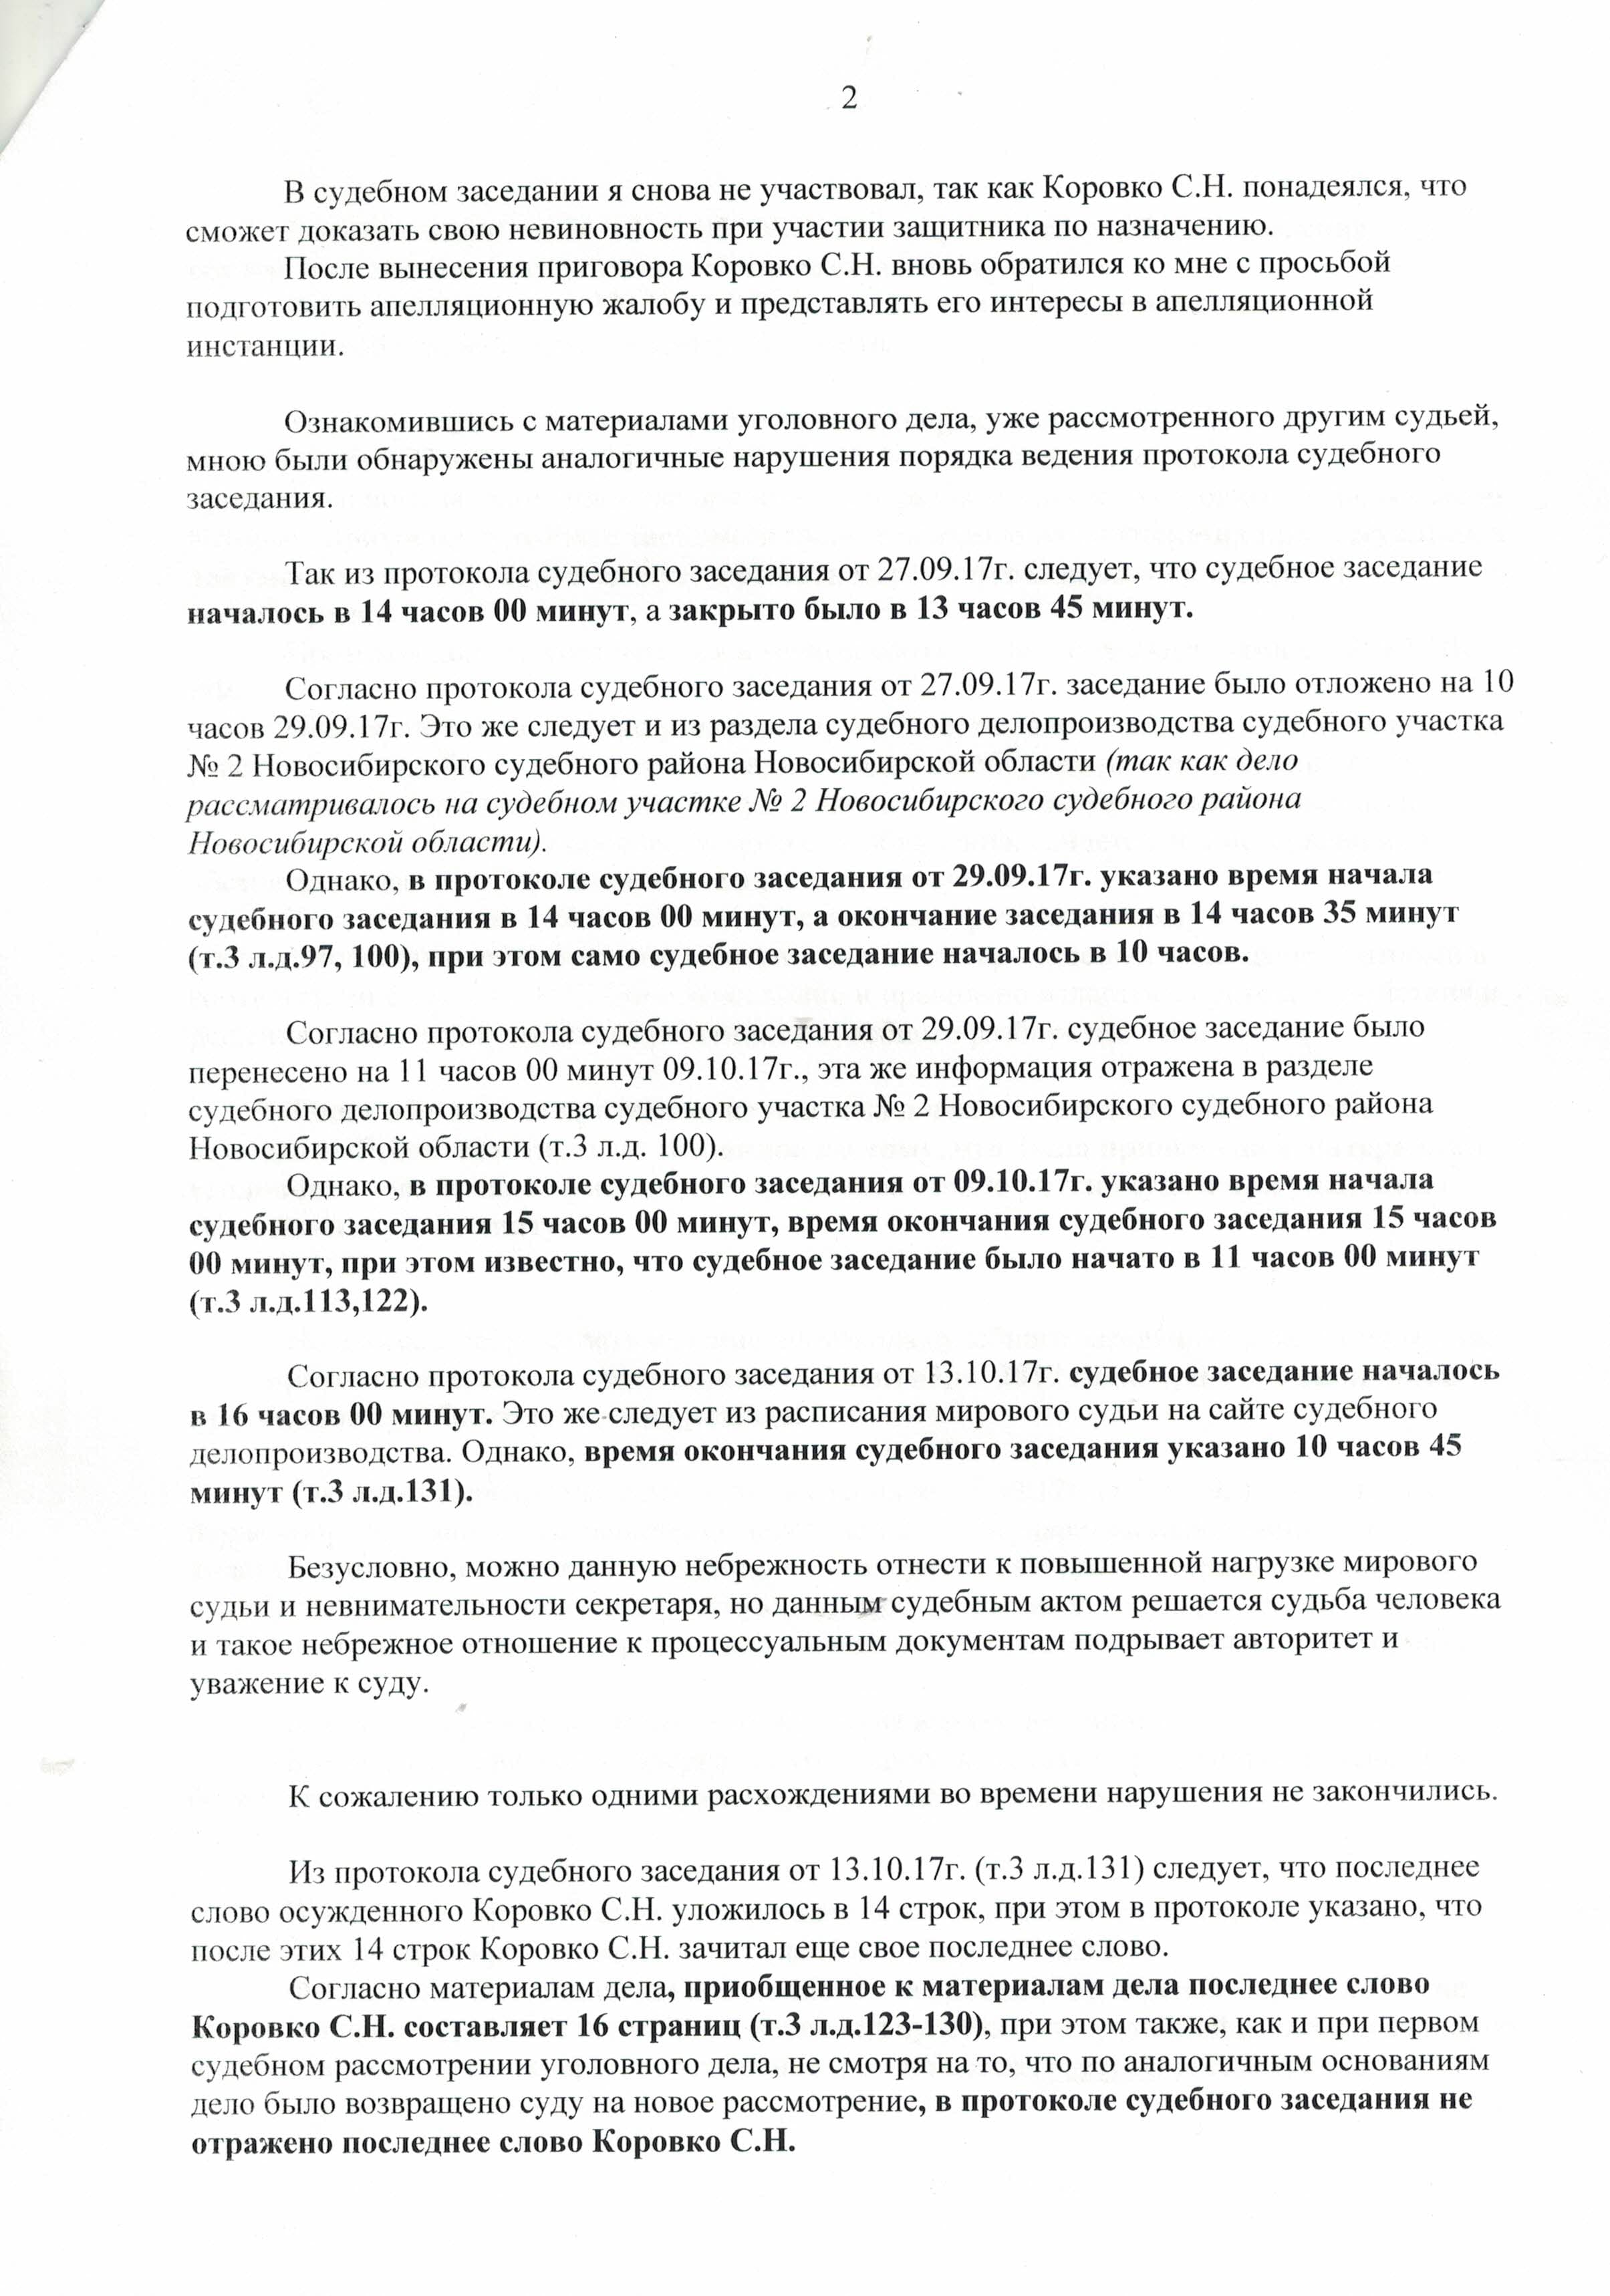 жалоба председателю Новосибирского областного суда2